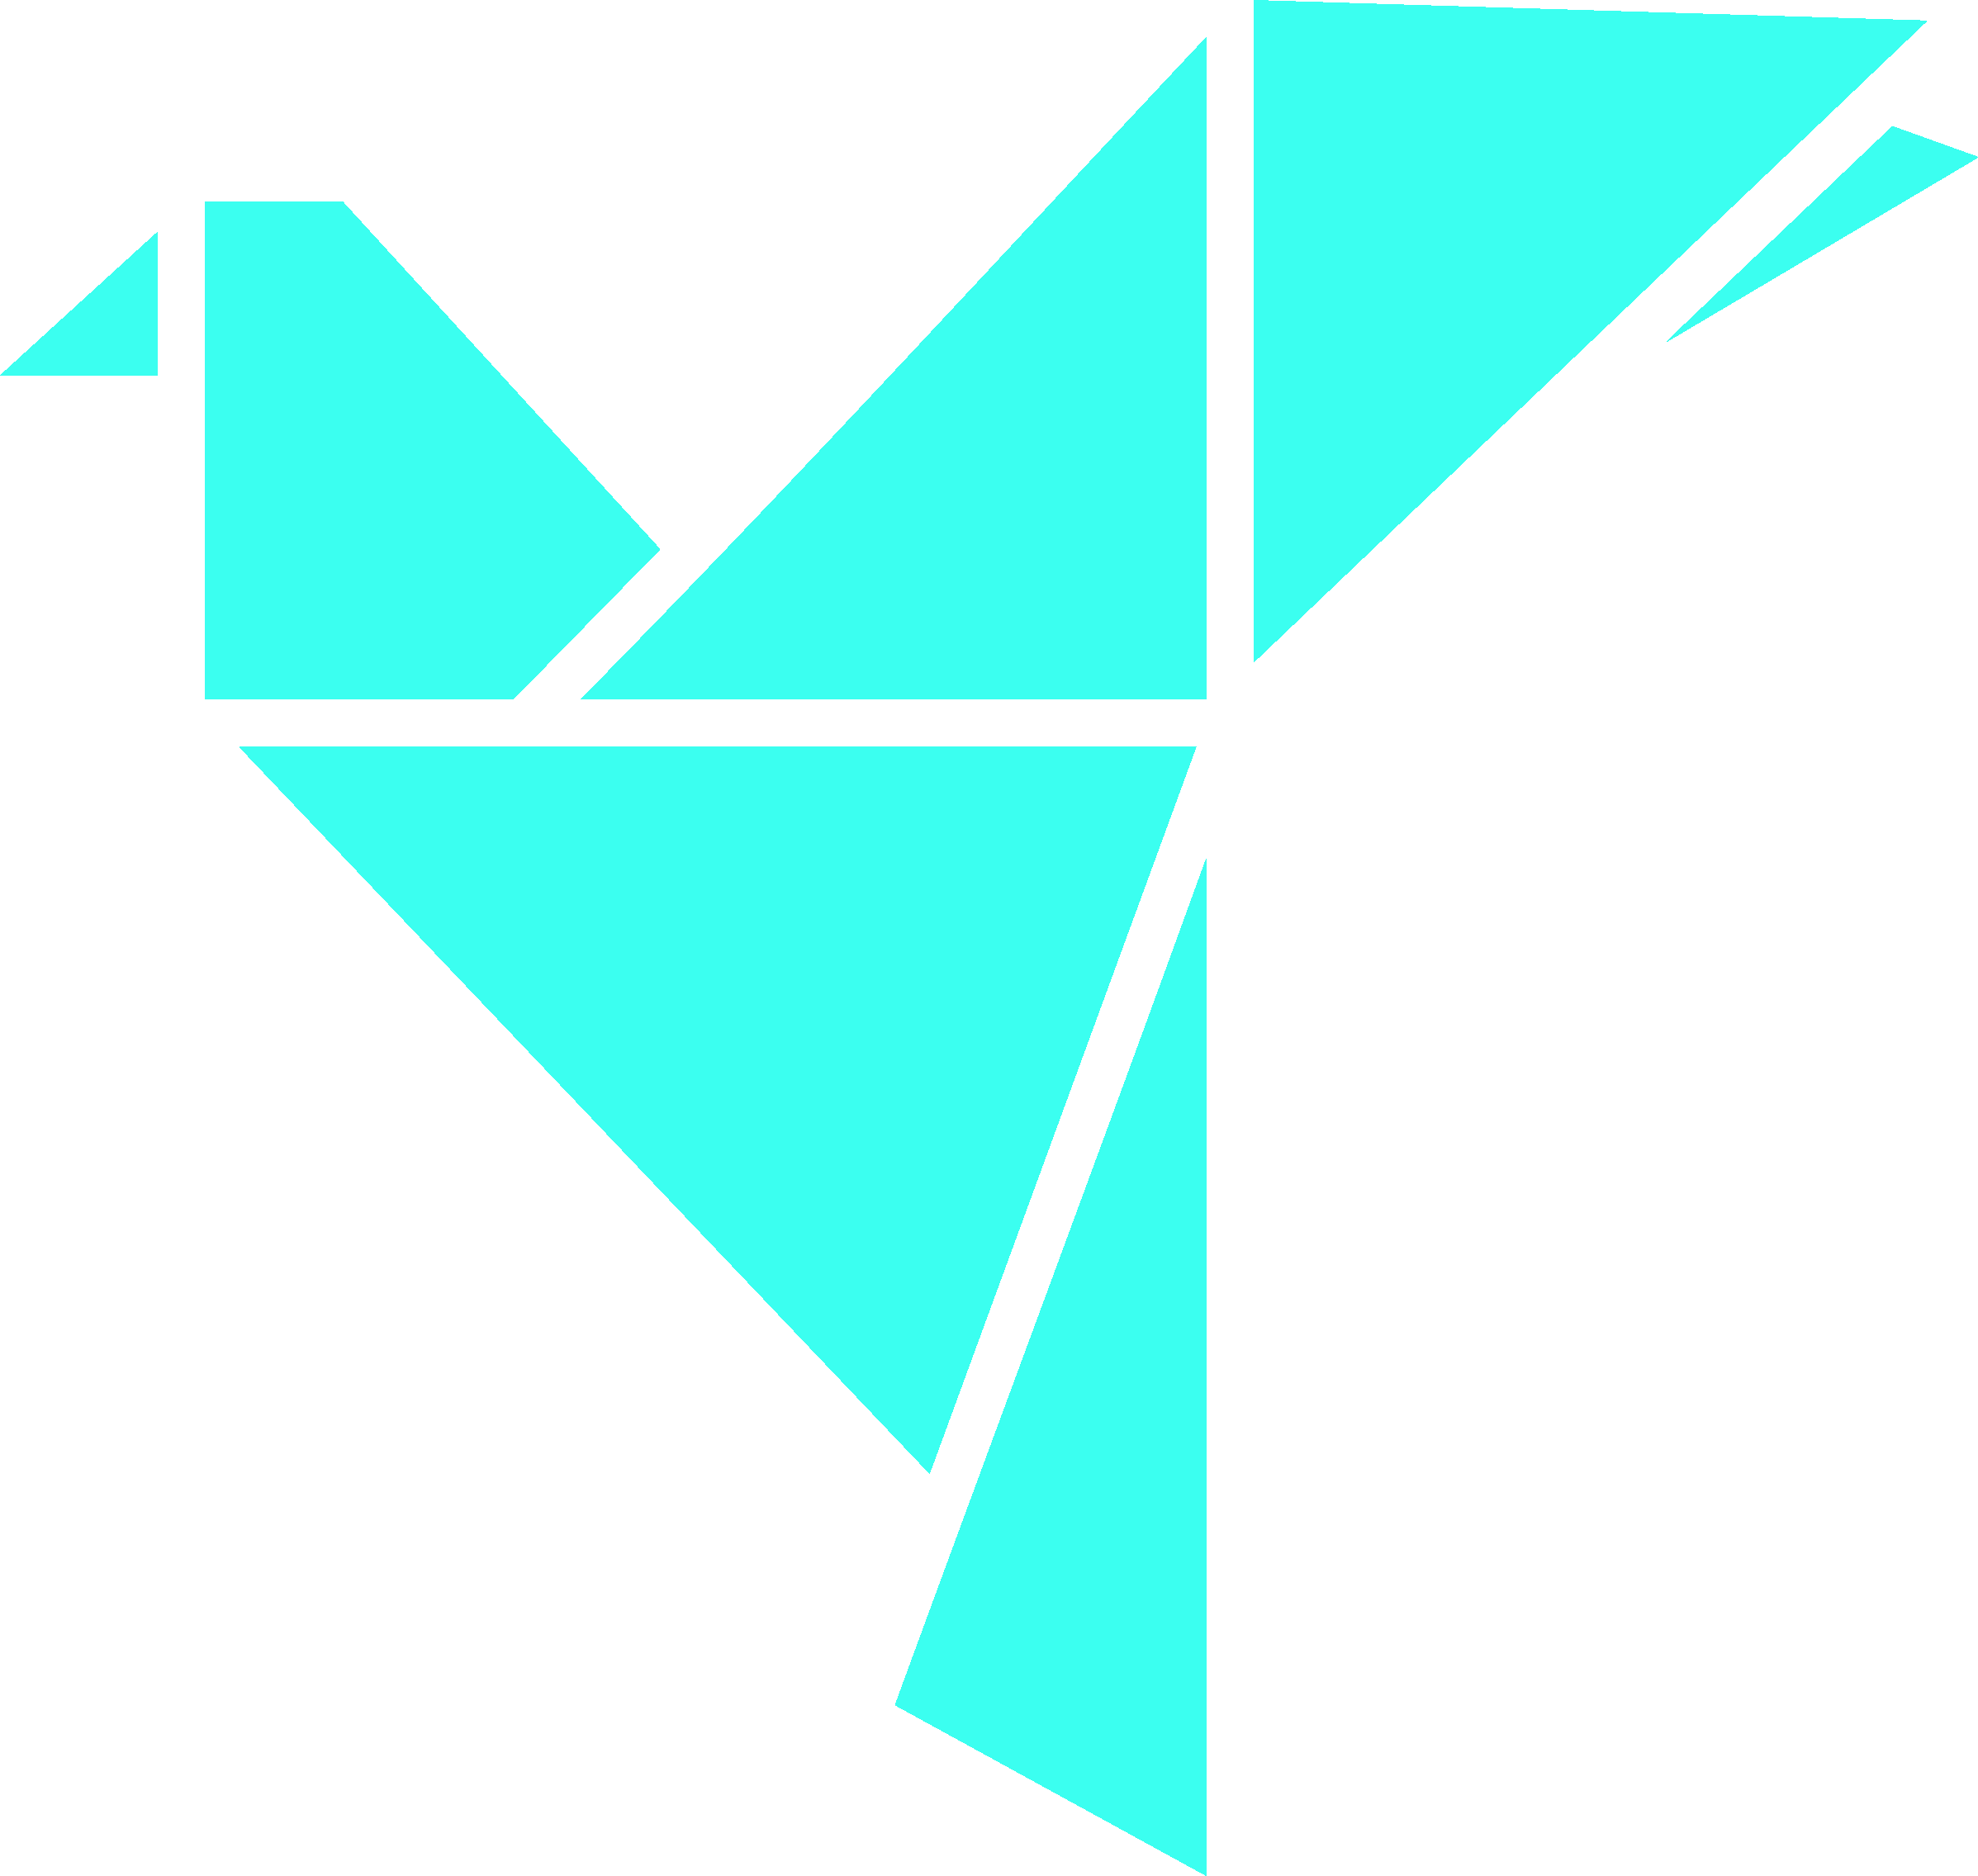 Velocitech logo aquamarine bird.